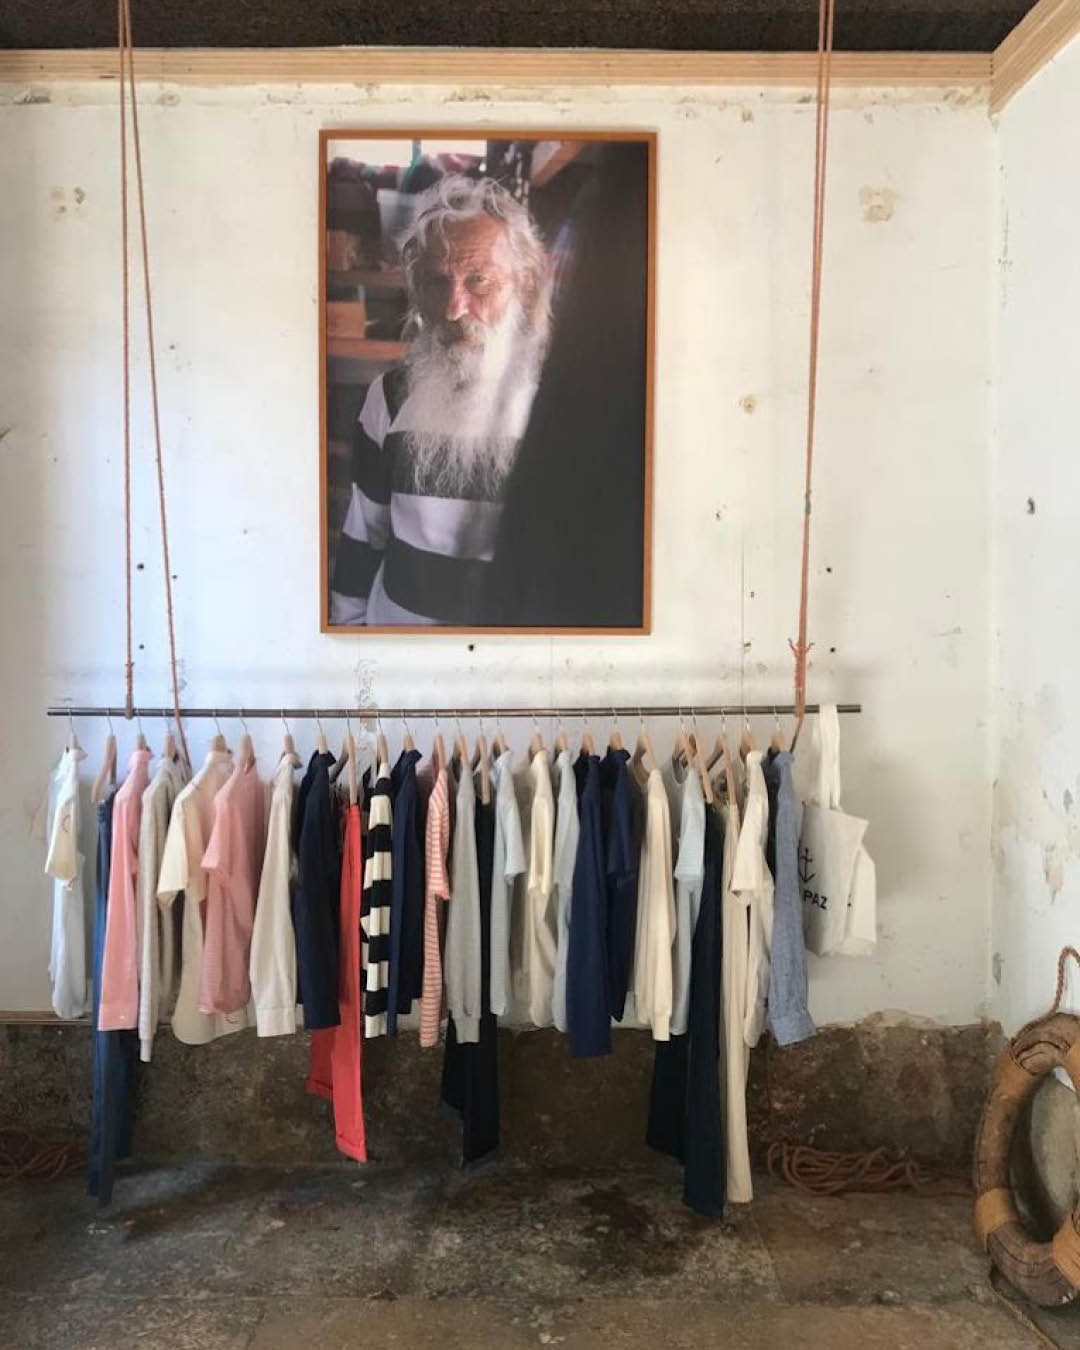 Clothes hang on a suspended rail beneath a portrait at La Paz shop in Lisbon.